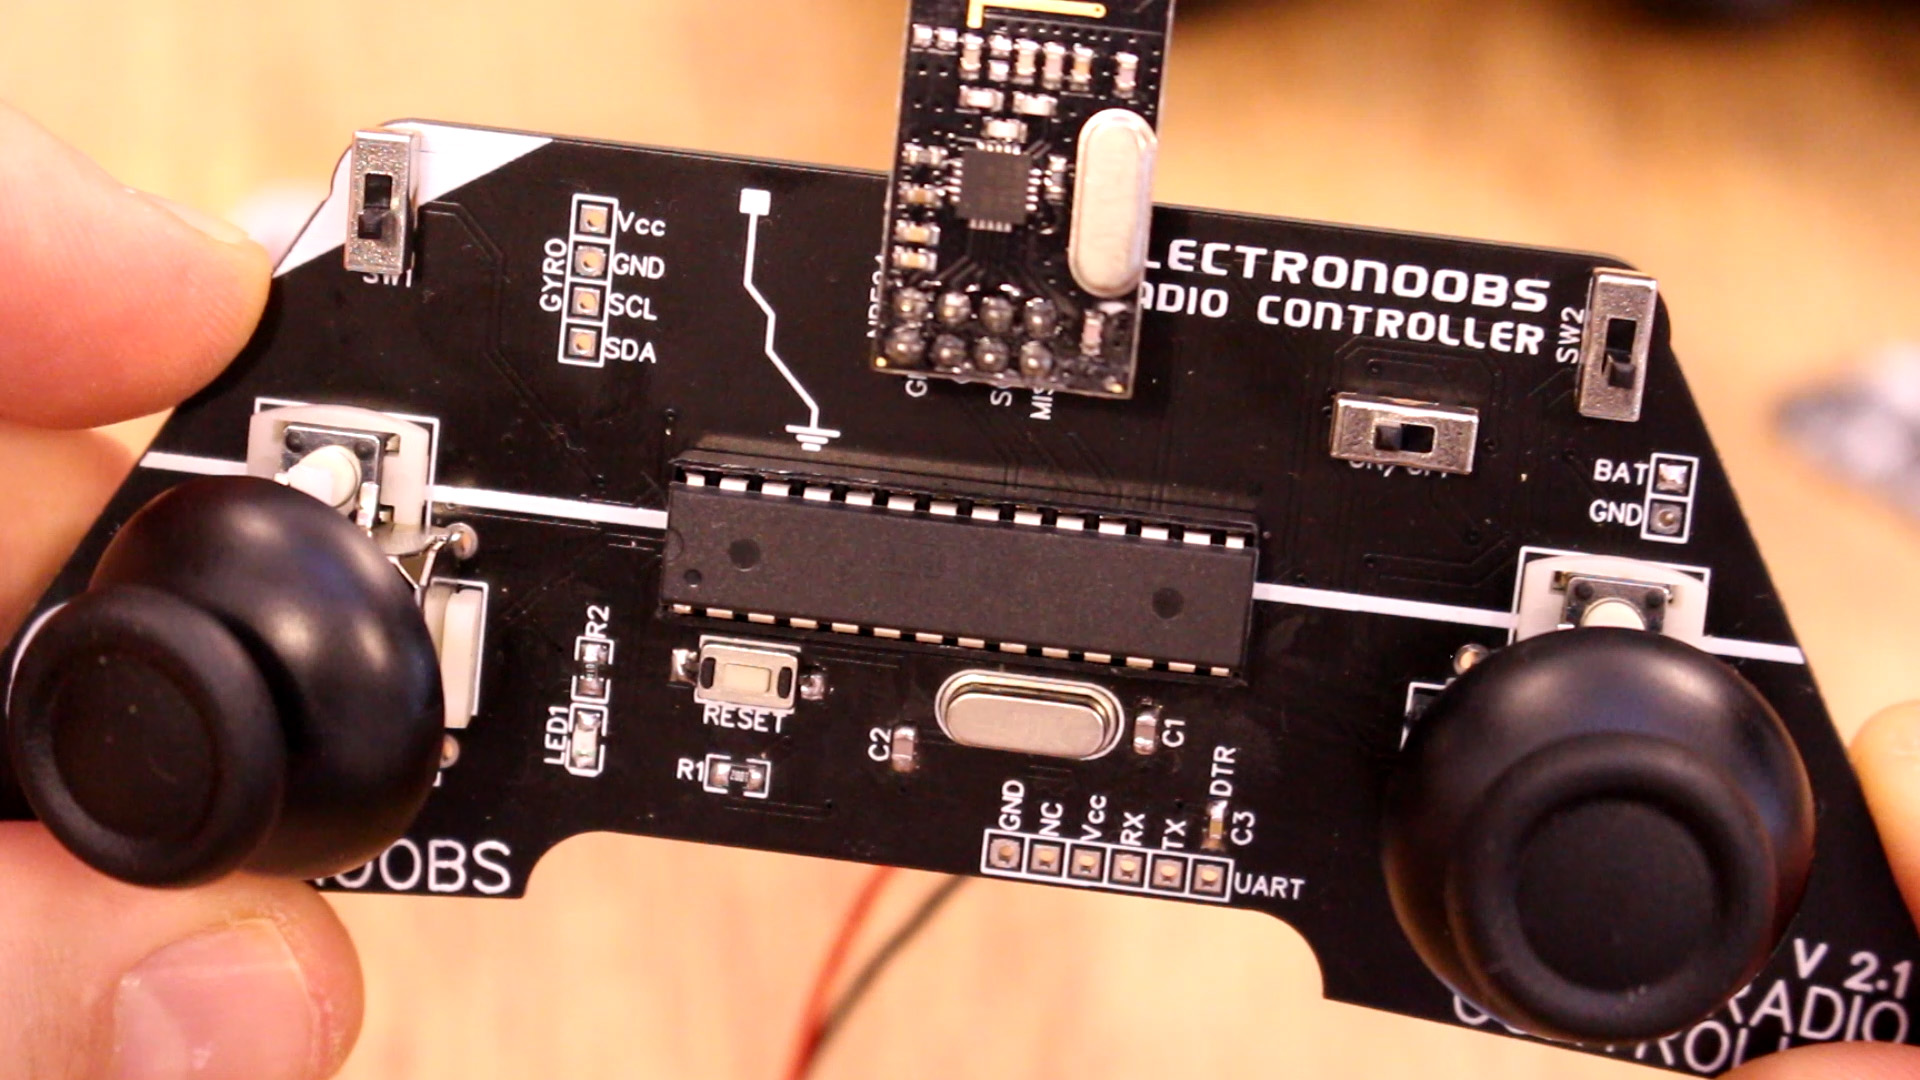 Arduino NRF24 radio controller PCB